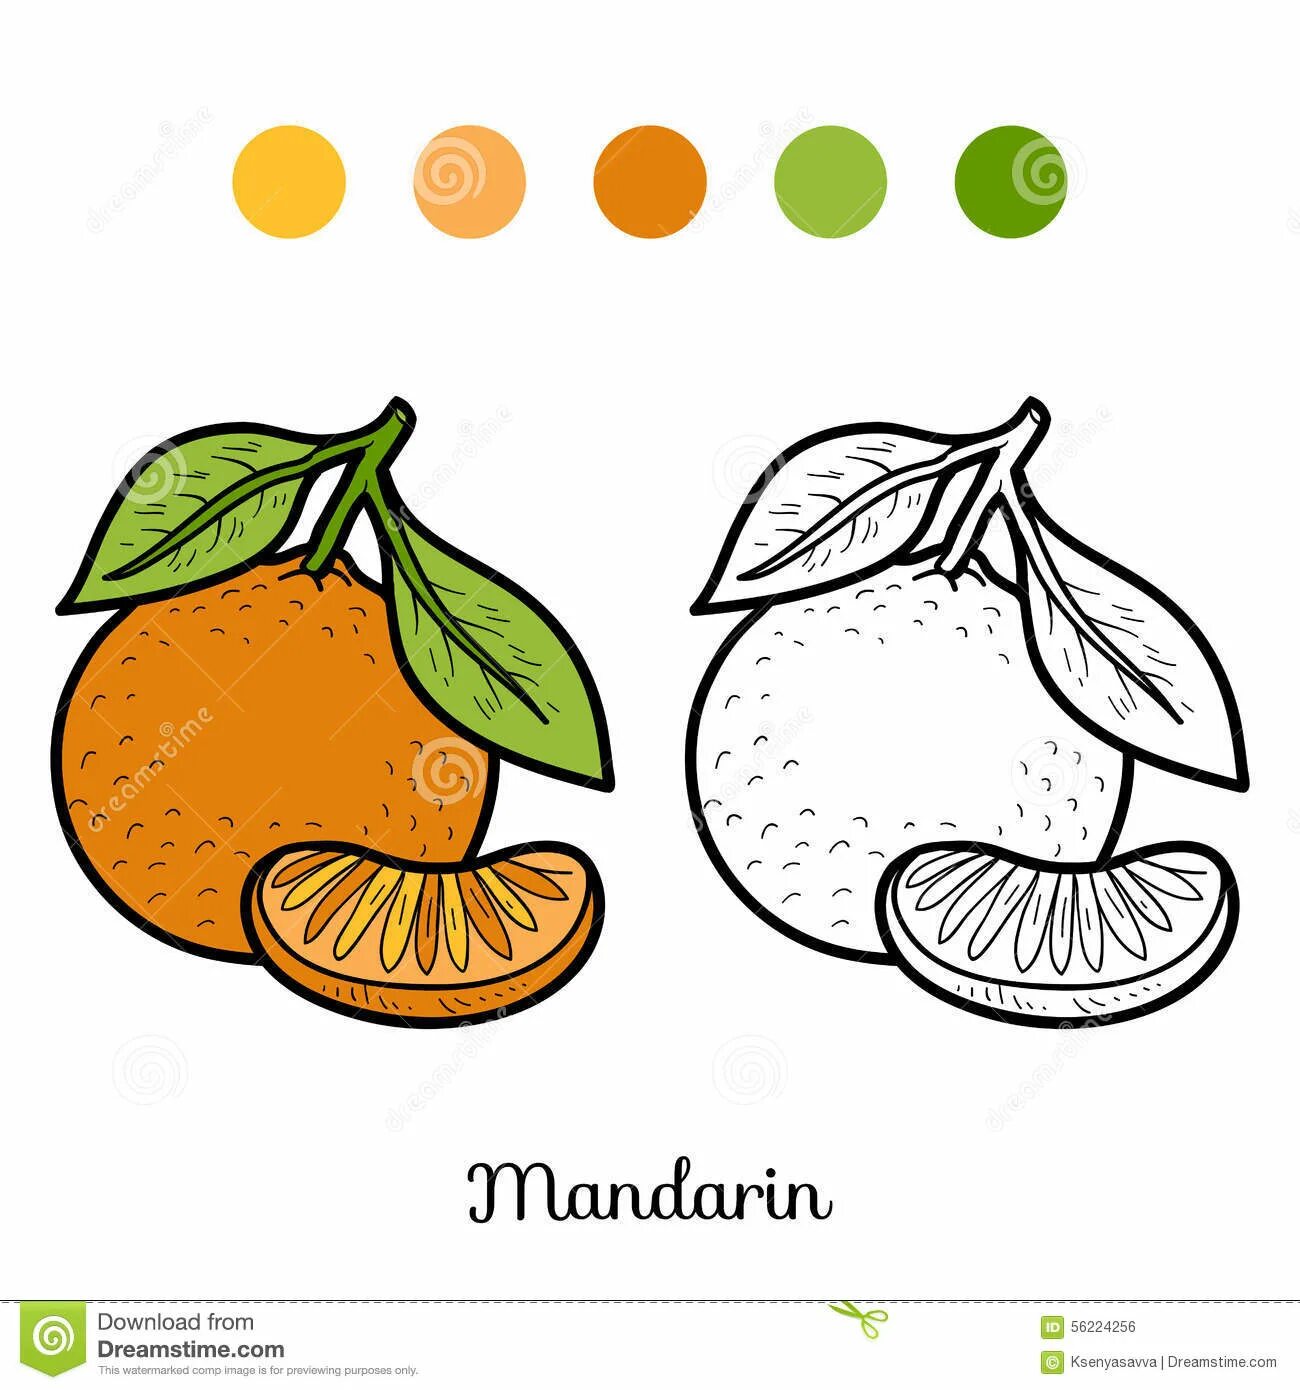 Mandarin for kids #1